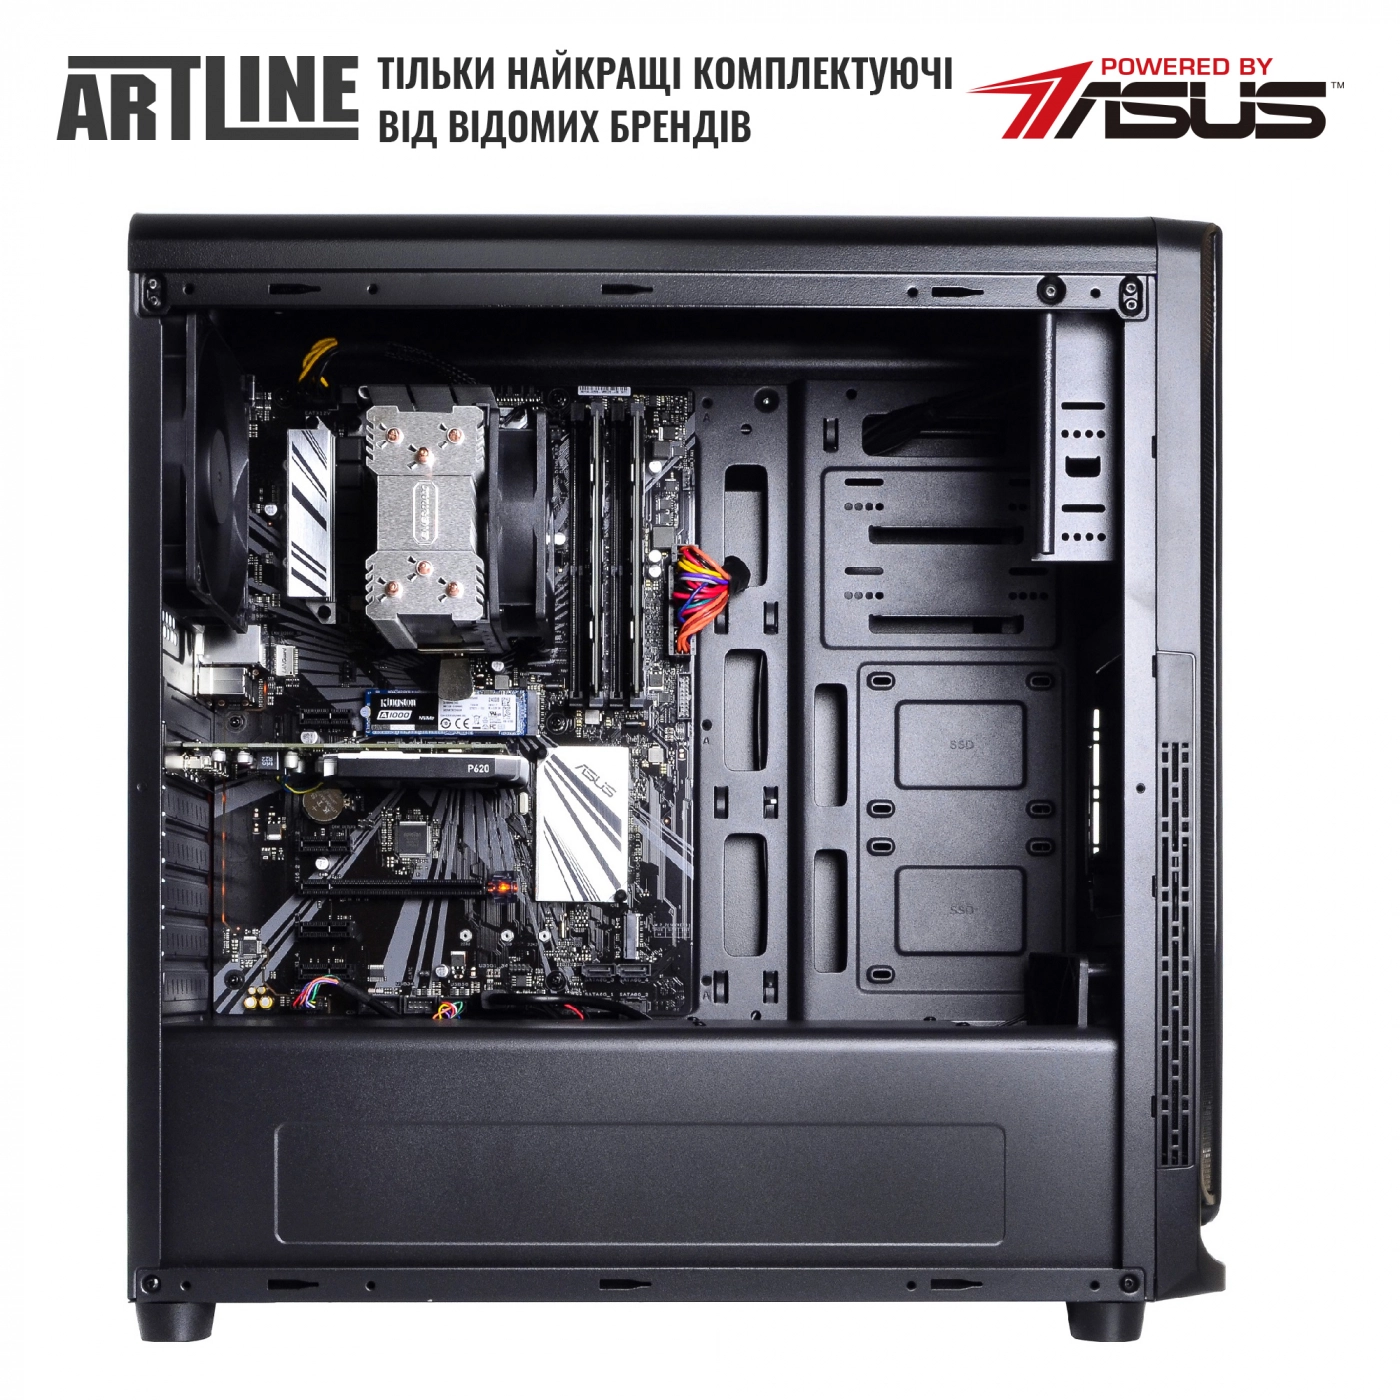 Купить Сервер ARTLINE Business T19v20 - фото 5